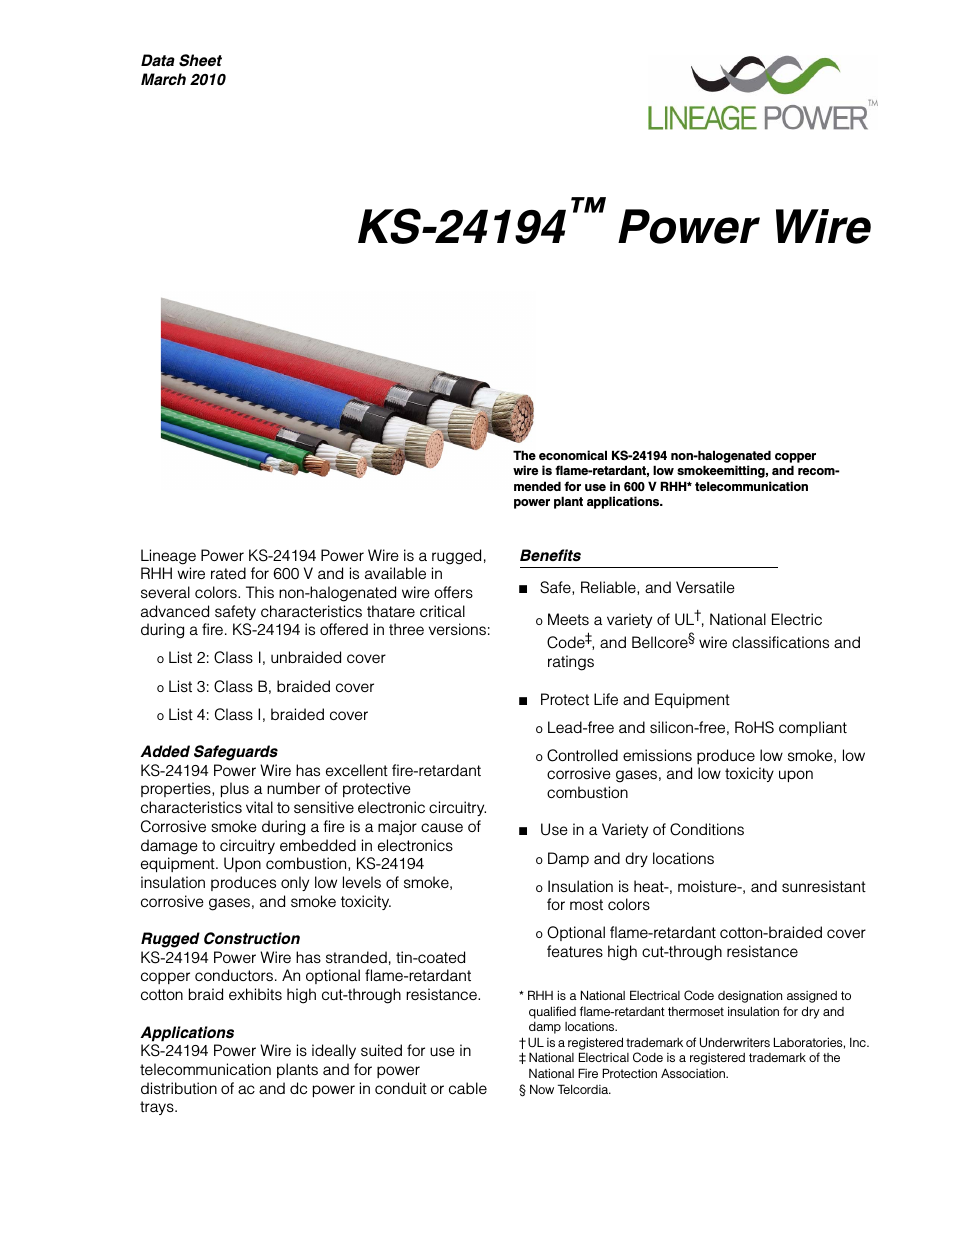 KS24194 Power Wire